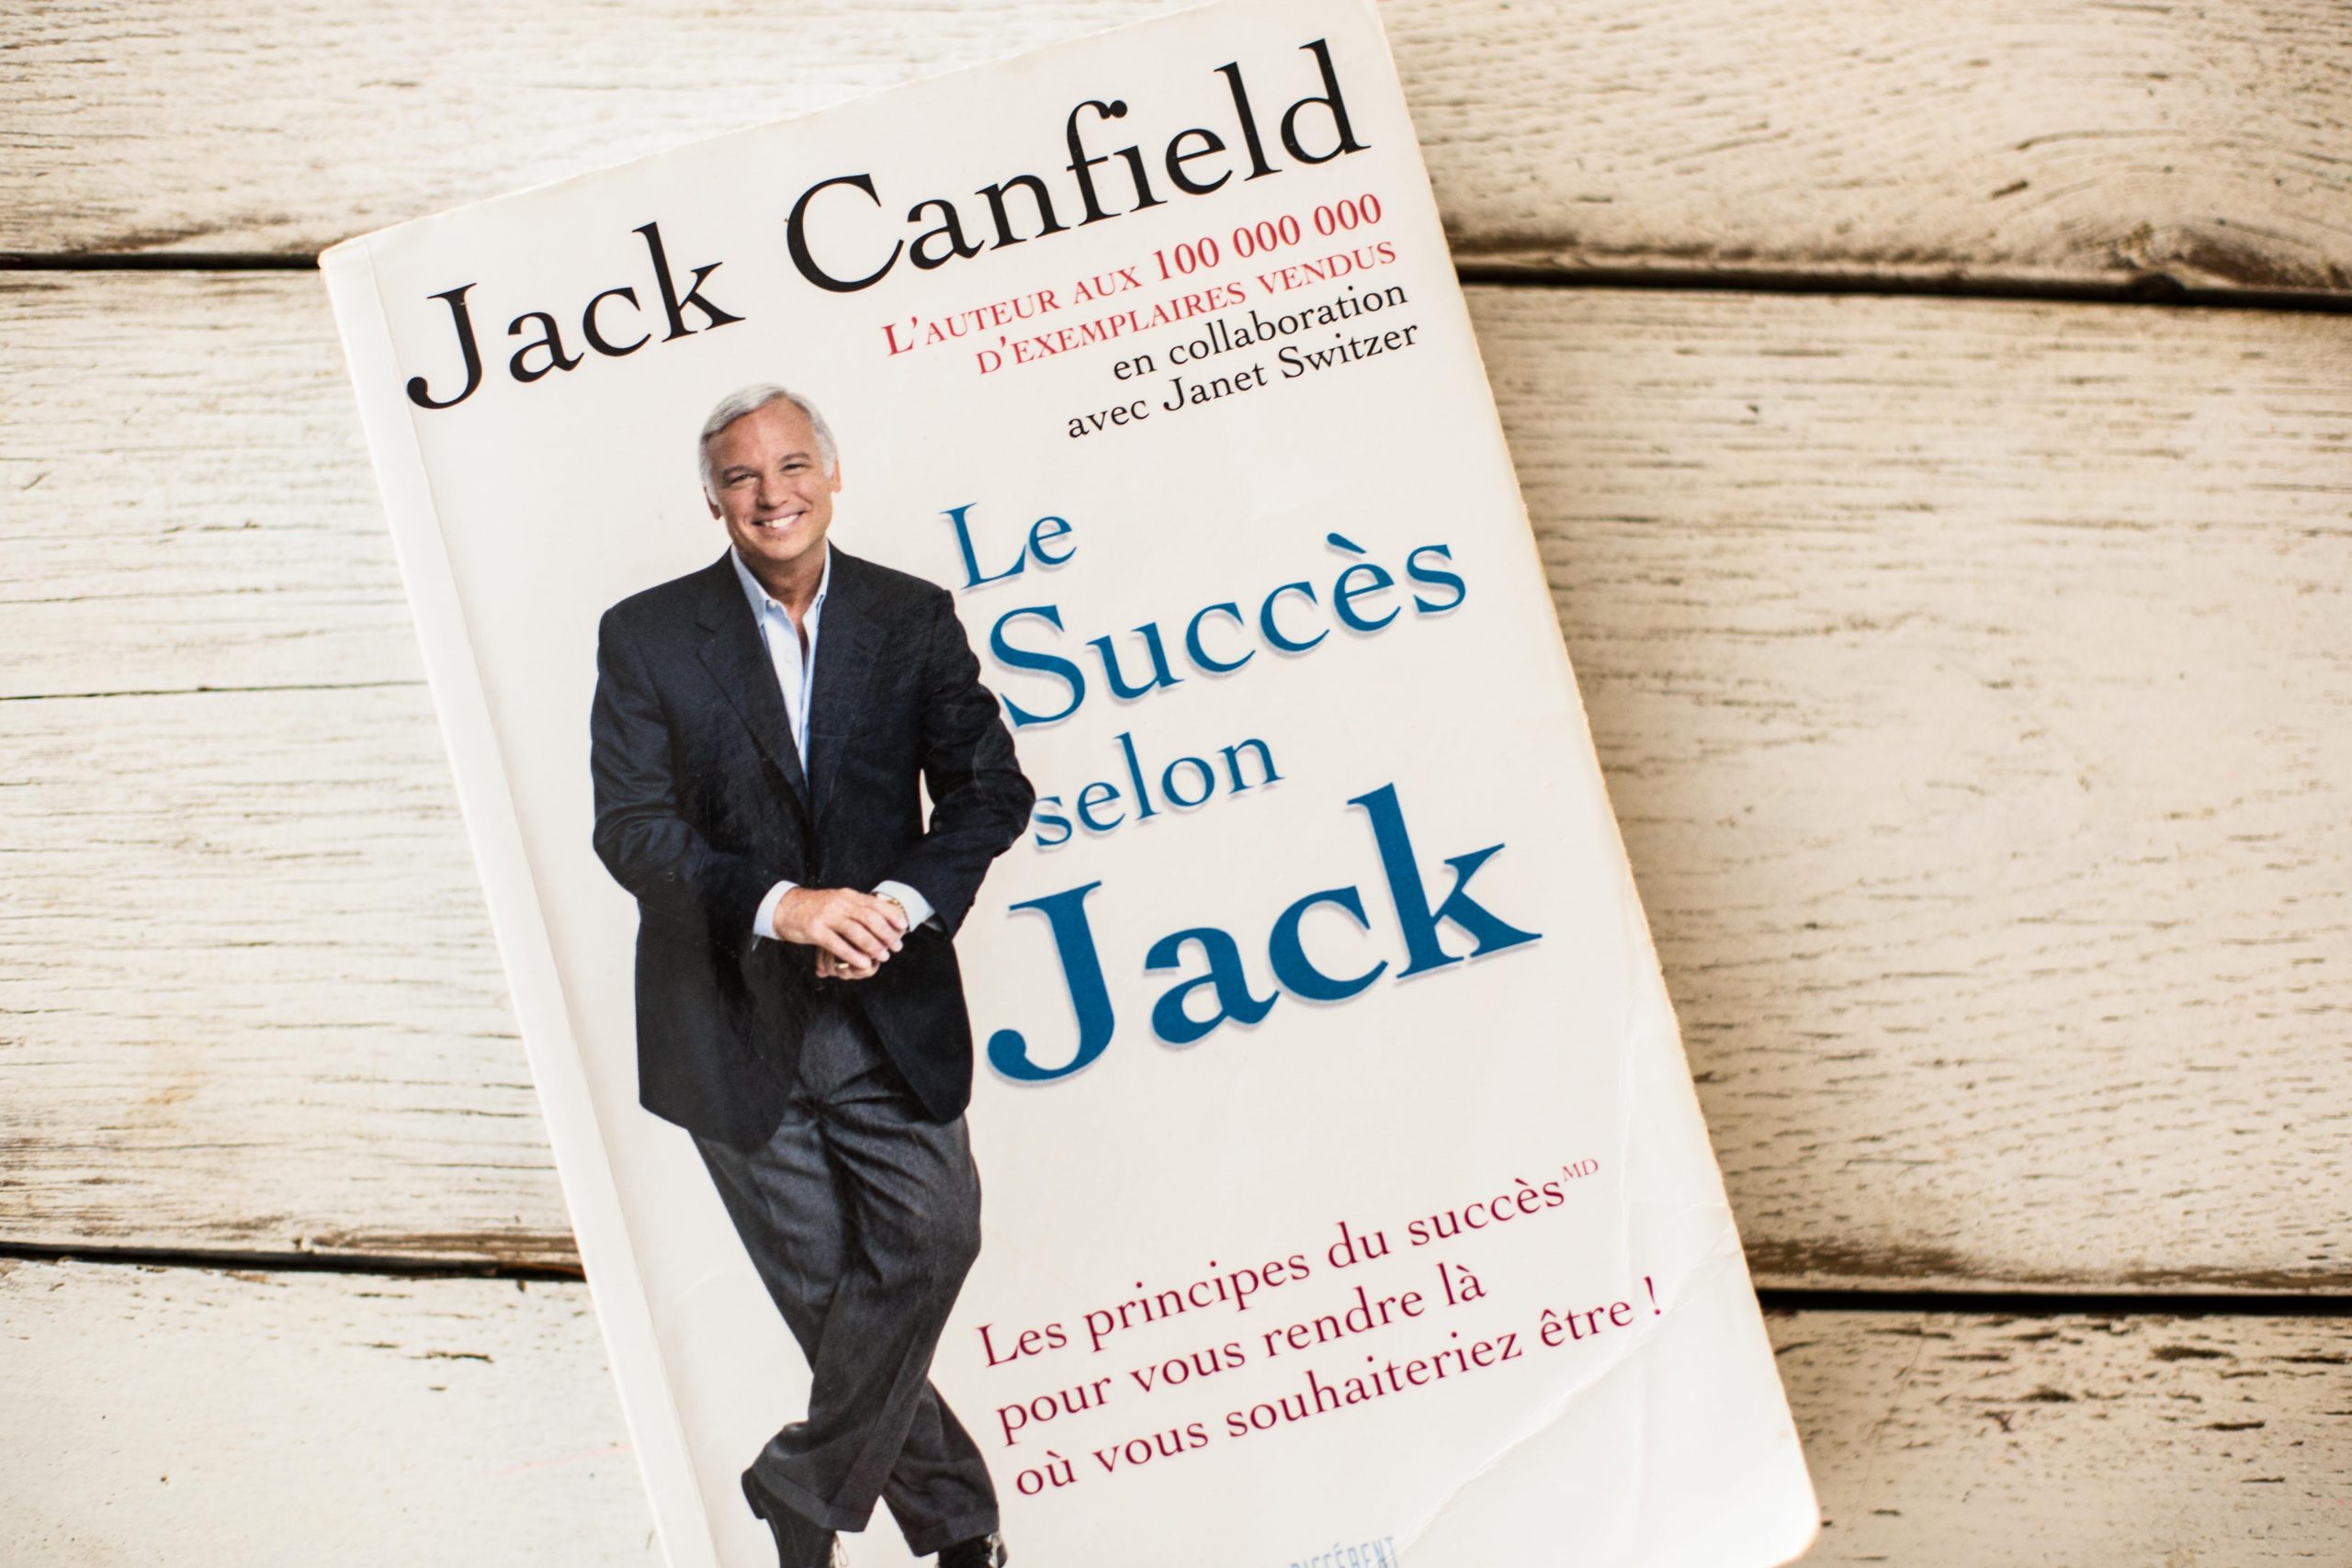 Le succès selon Jack Jack Canfield